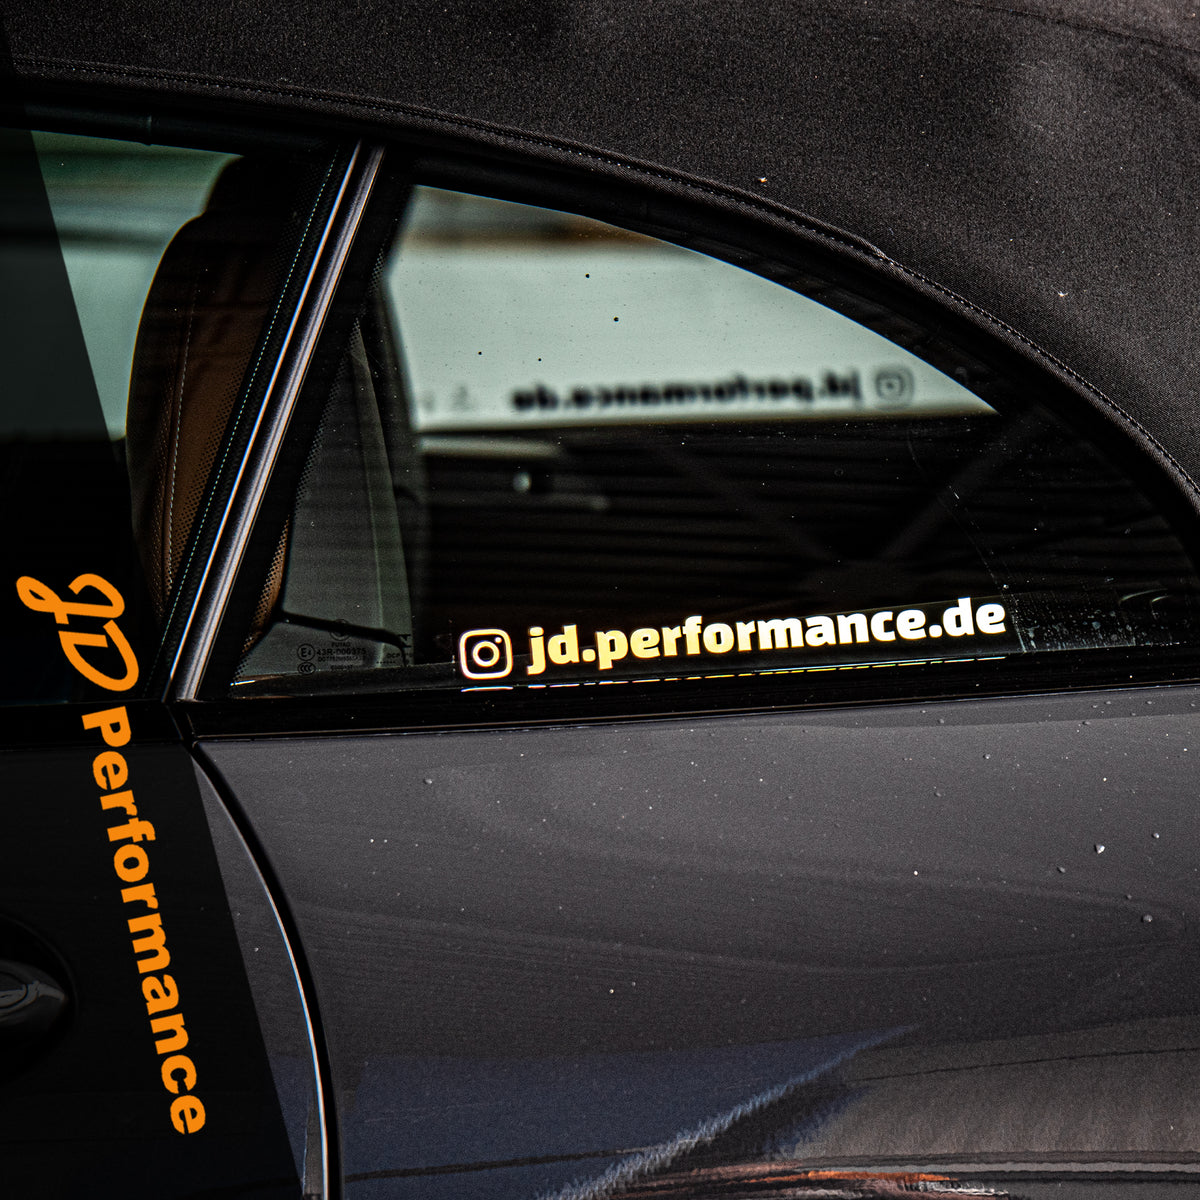 JDP Instagram Sticker Aufkleber – JD Performance GmbH Onlineshop